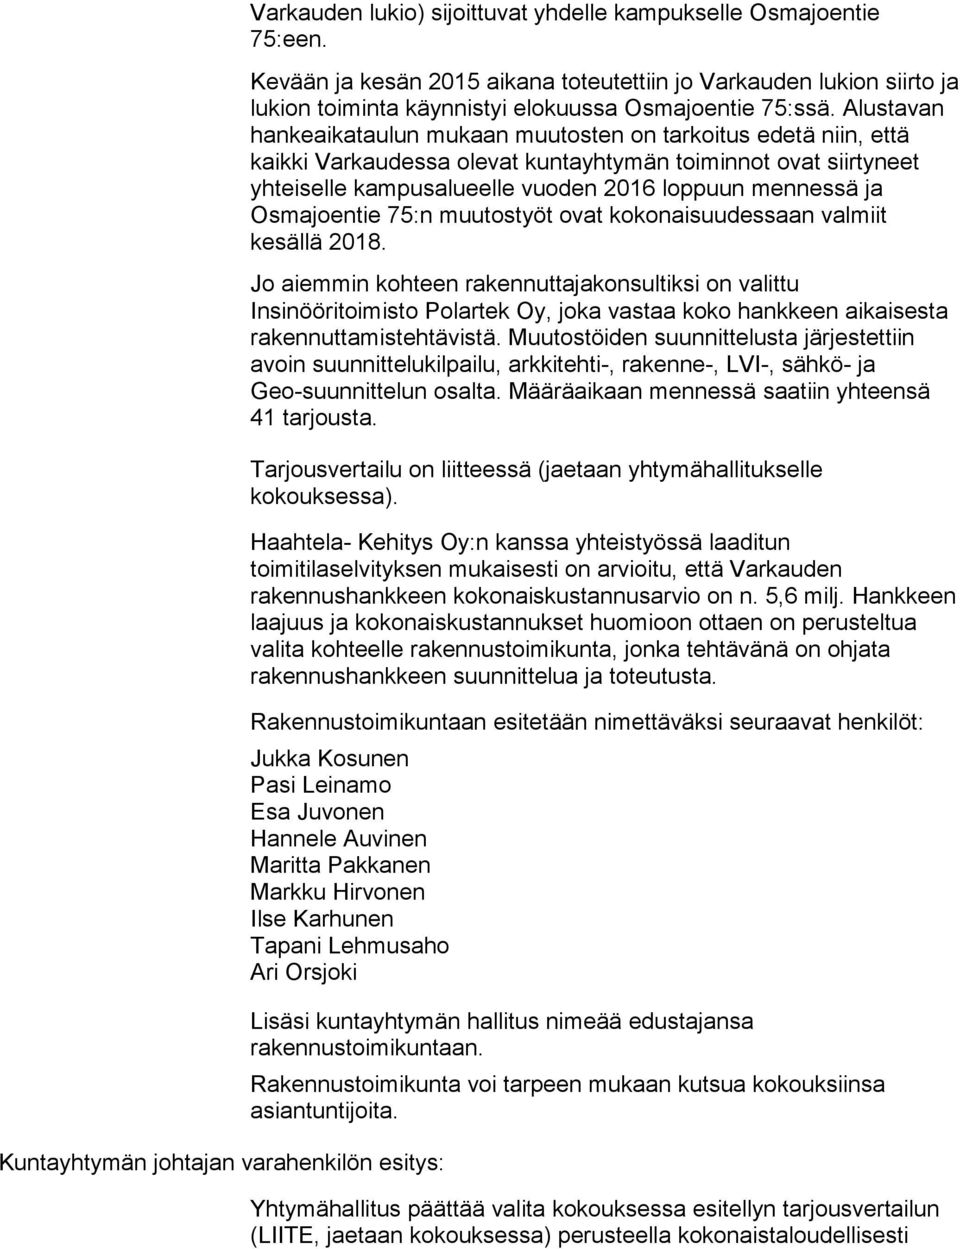 Osmajoentie 75:n muutostyöt ovat kokonaisuudessaan valmiit kesällä 2018.